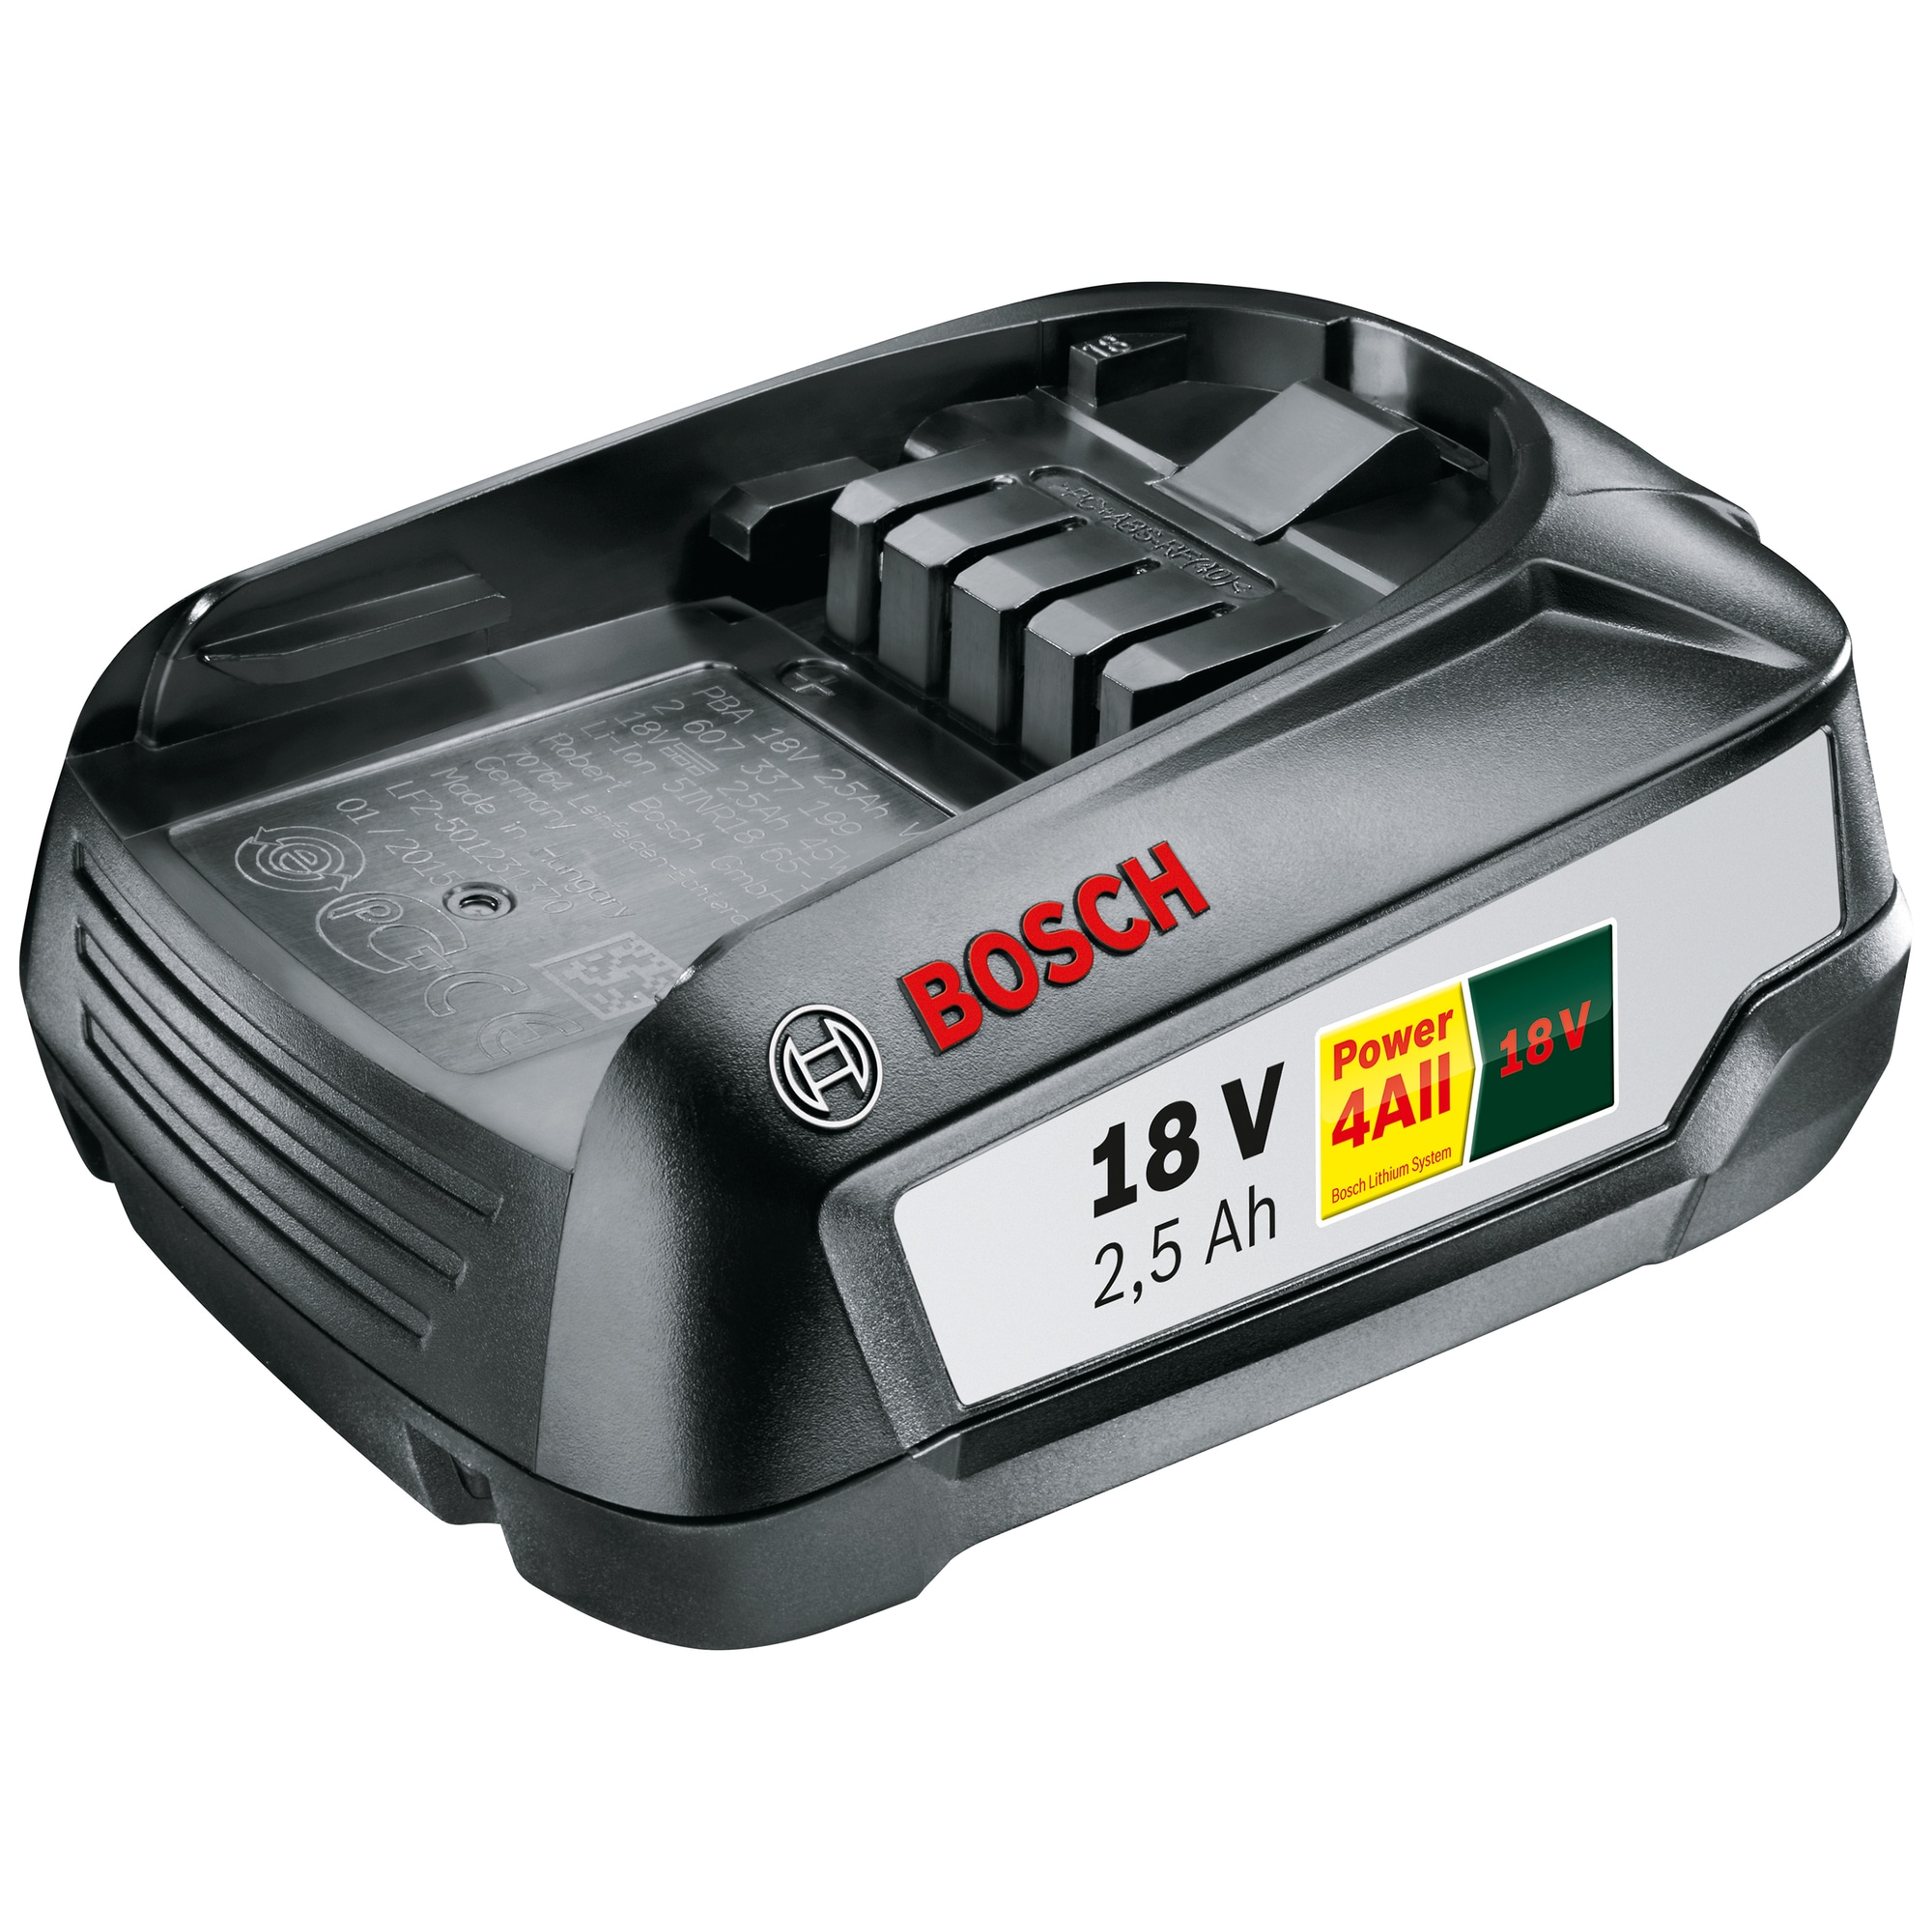 Bosch batteri PBA 18V 2,5Ah W-B 1600A005B0 med PrisMatch